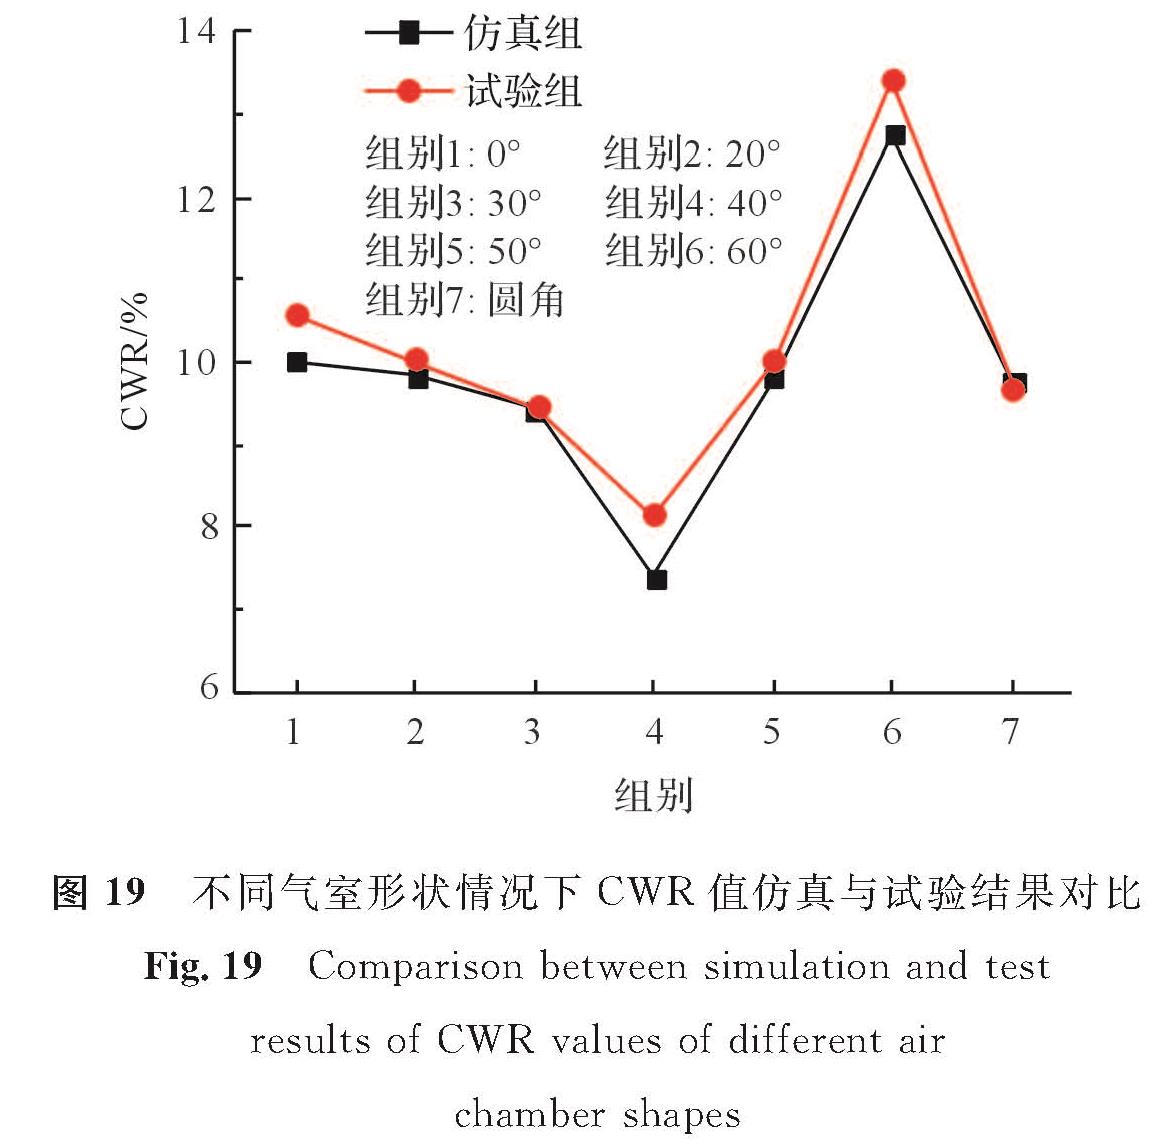 图 19 不同气室形状情况下CWR值仿真与试验结果对比<br/>Fig.19 Comparison between simulation and test results of CWR values of different air chamber shapes